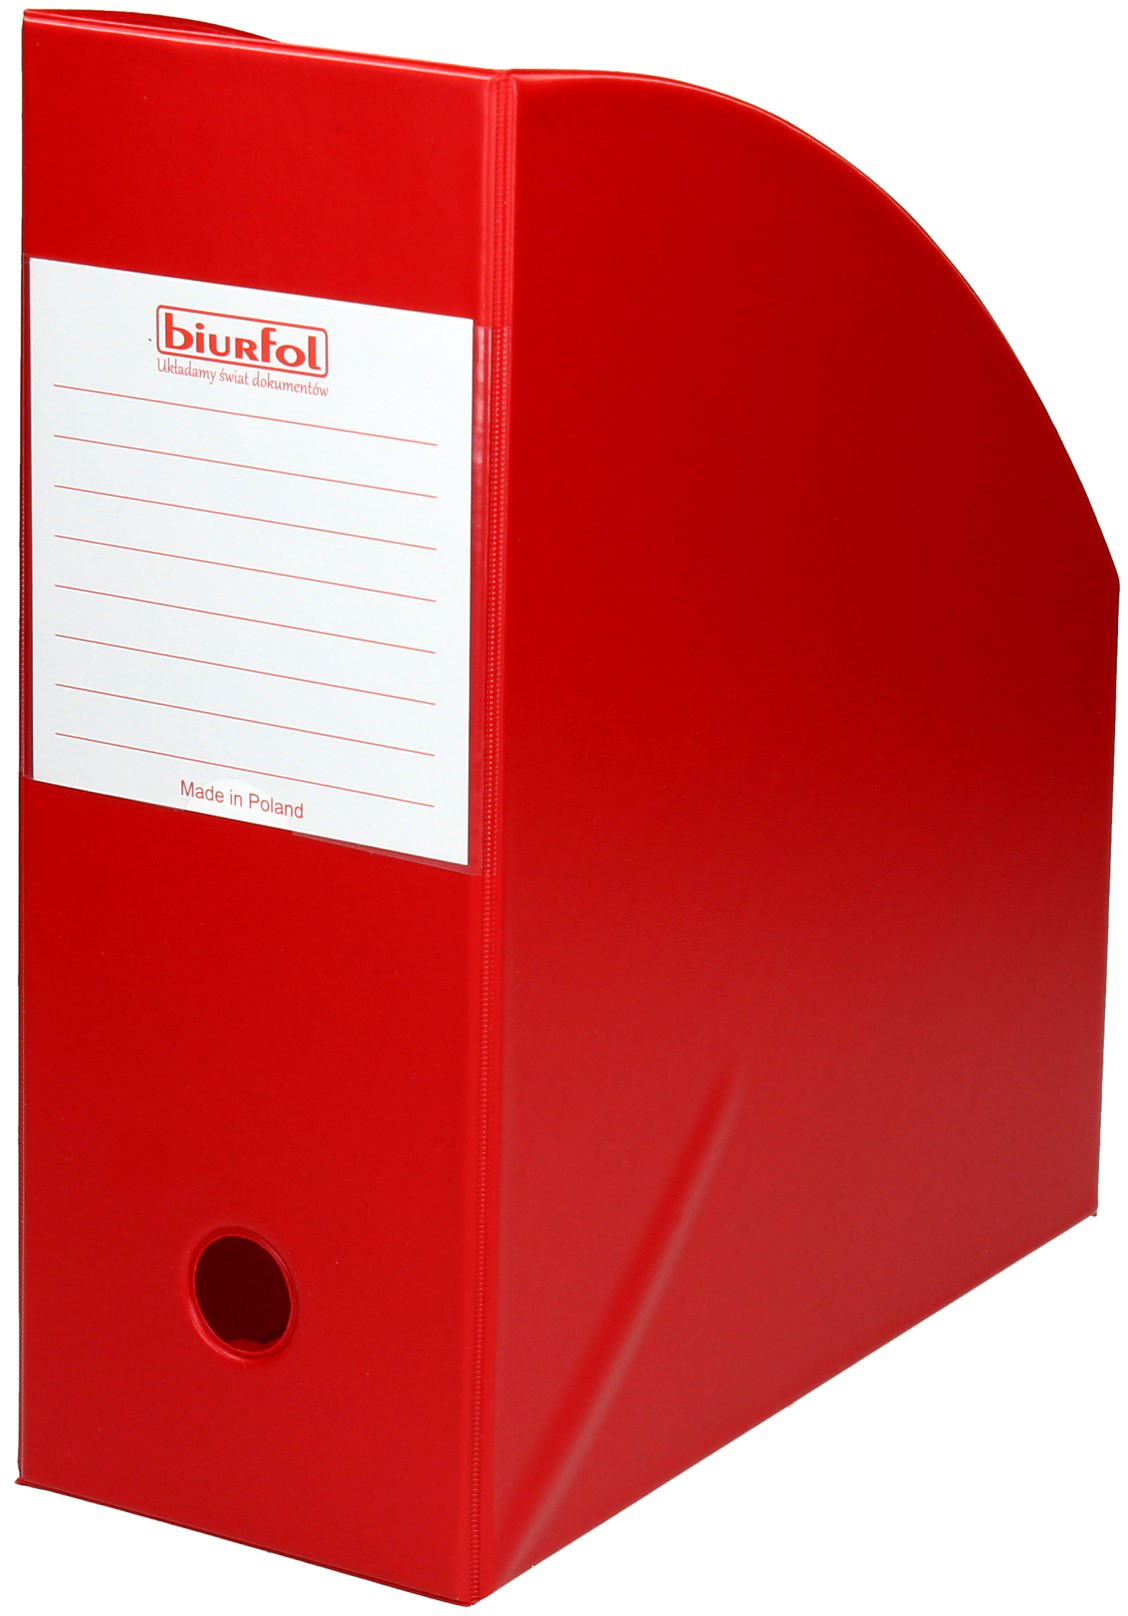 BIURFOL Pojemnik czasopisma 110mm czerwony PCV Biurfol